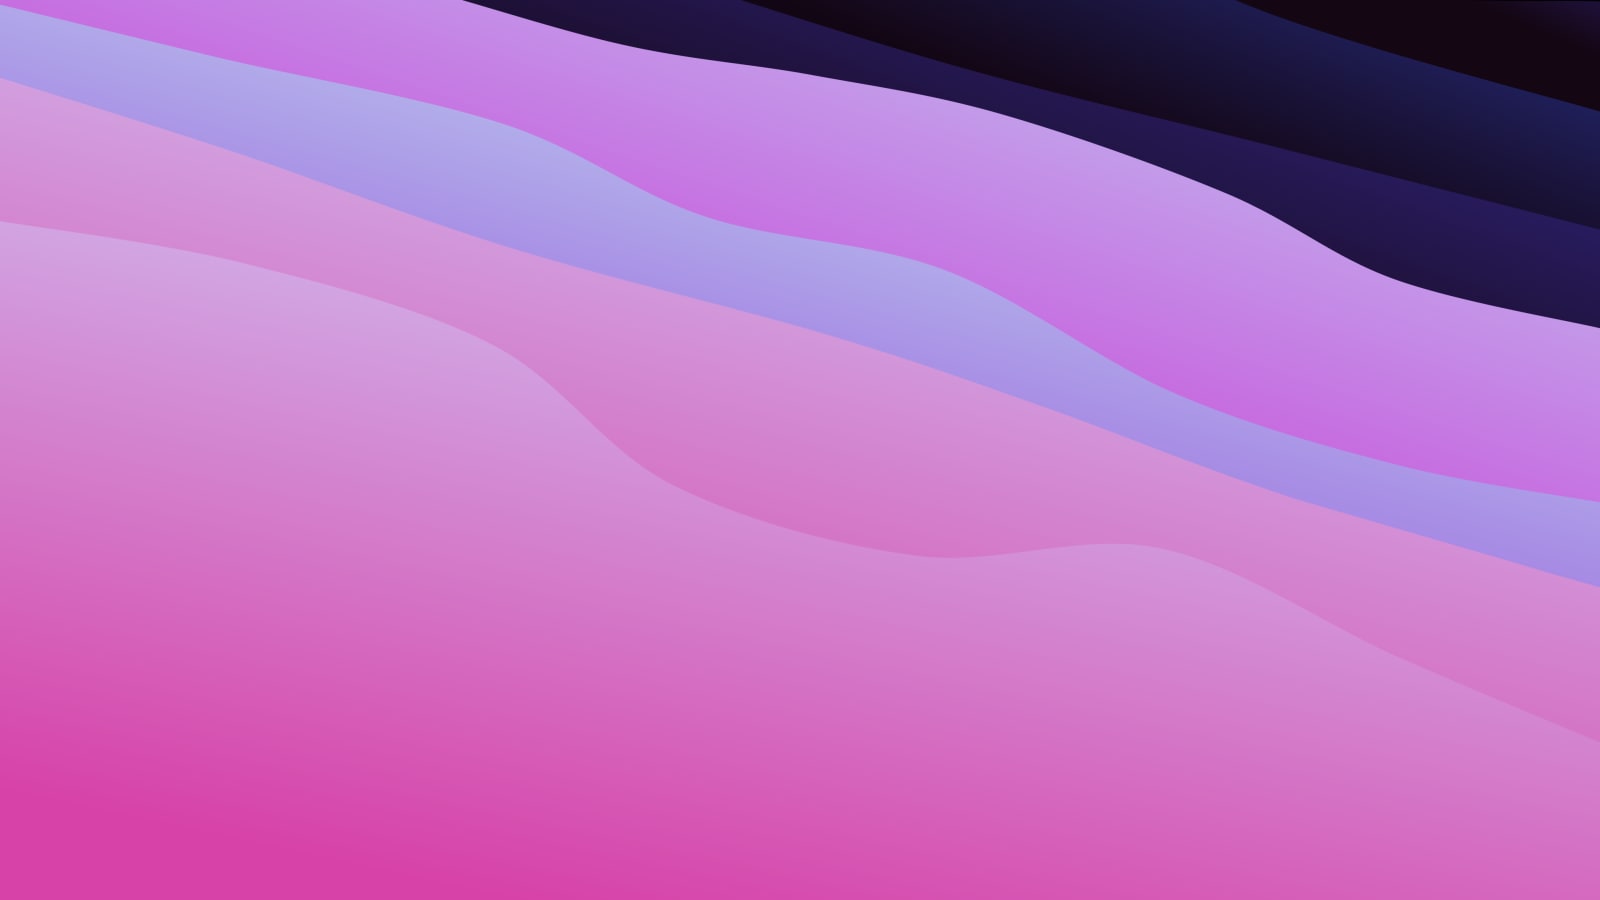 Thiết kế macOS Big Sur Waves SVG động làm cho website của bạn trở nên sống động và hấp dẫn hơn bao giờ hết! Những đường sóng với sắc màu gradient lôi cuốn, cùng với khả năng tùy chỉnh cao sẽ là sự lựa chọn tốt nhất cho những người công nghệ đích thực. Hãy xem ngay!